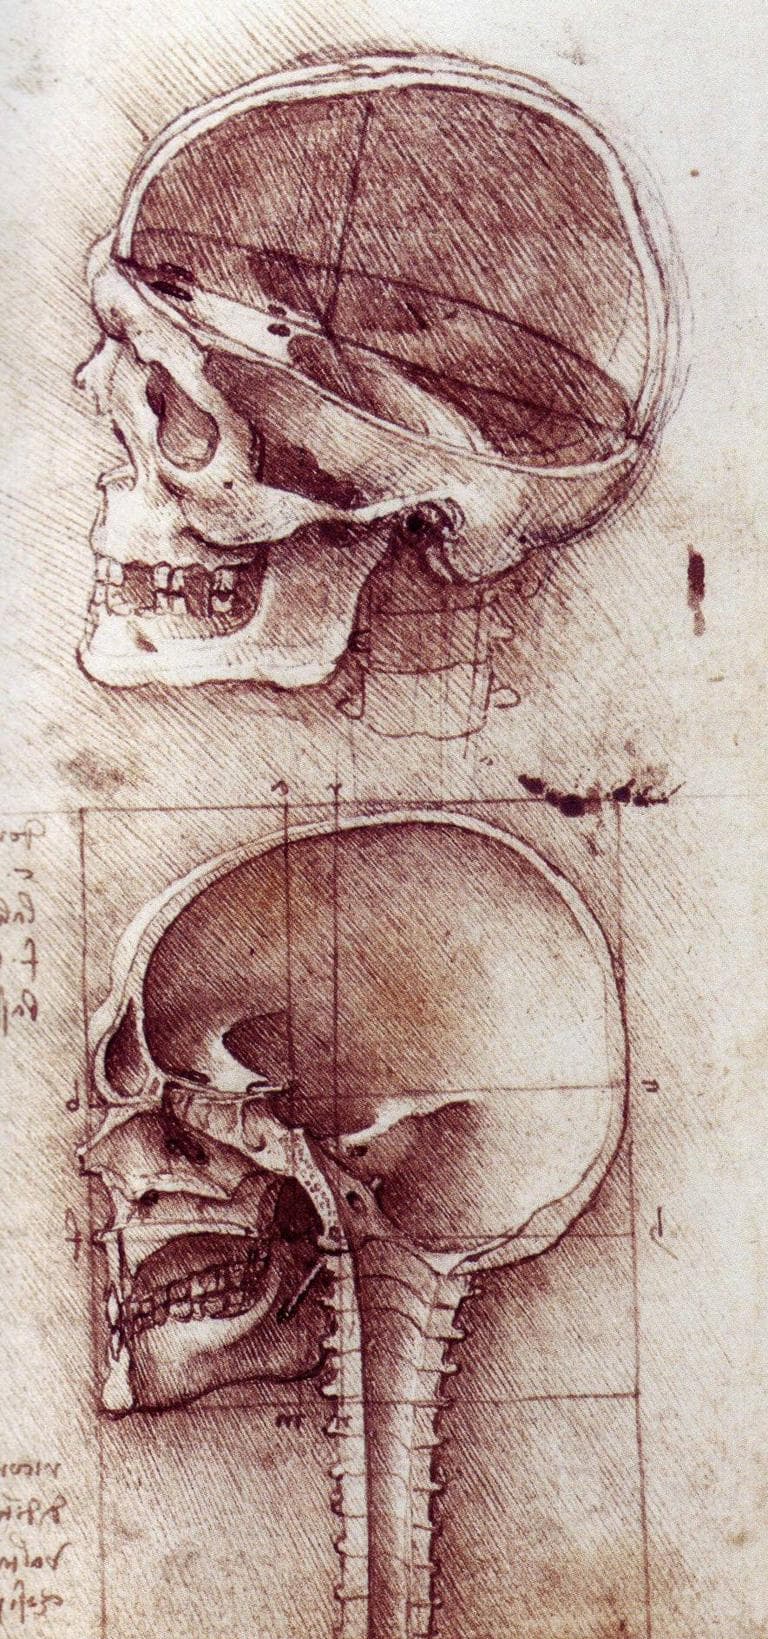 View of a Skull (da Vinci c. 1489)